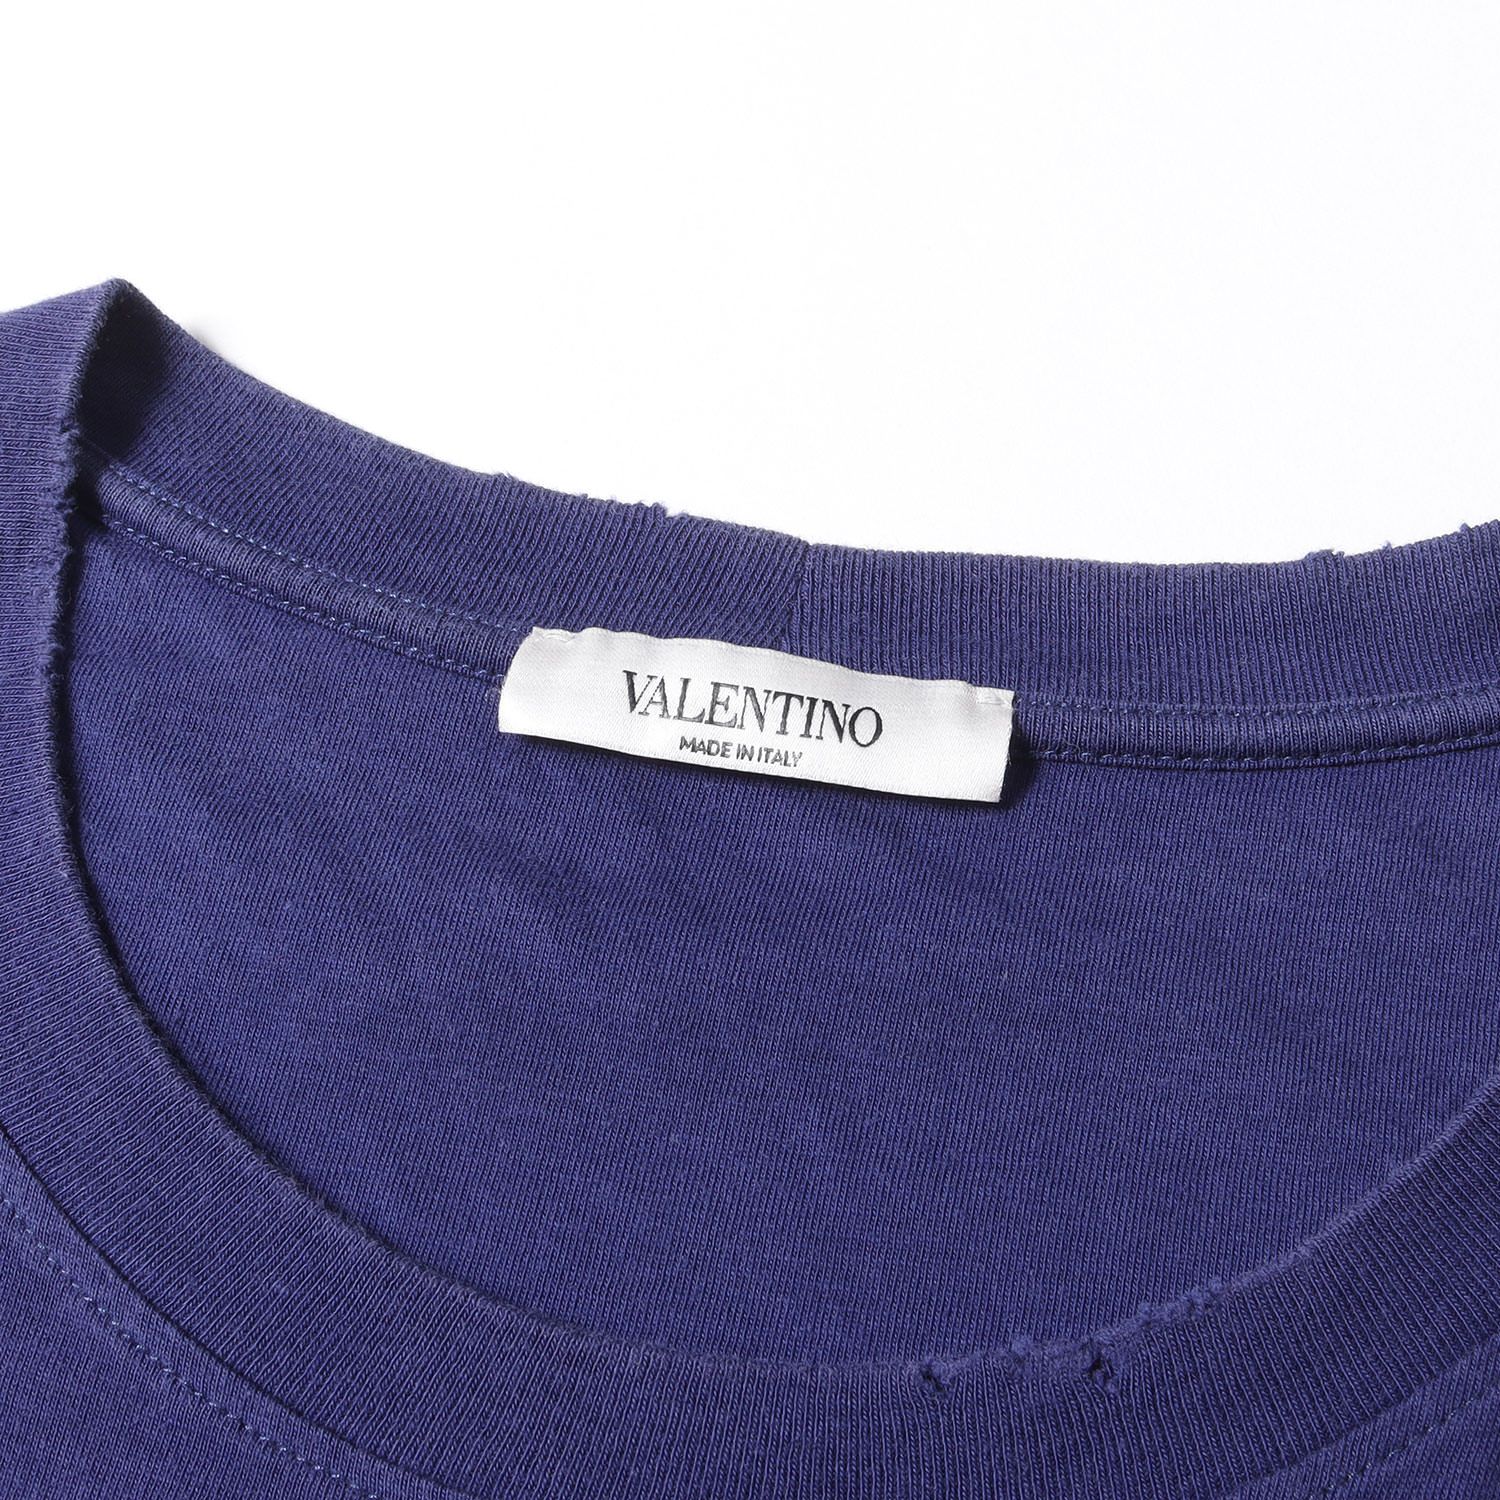 VALENTINO ヴァレンティノ Tシャツ サイズ:S ダメージ加工 ラメ ...